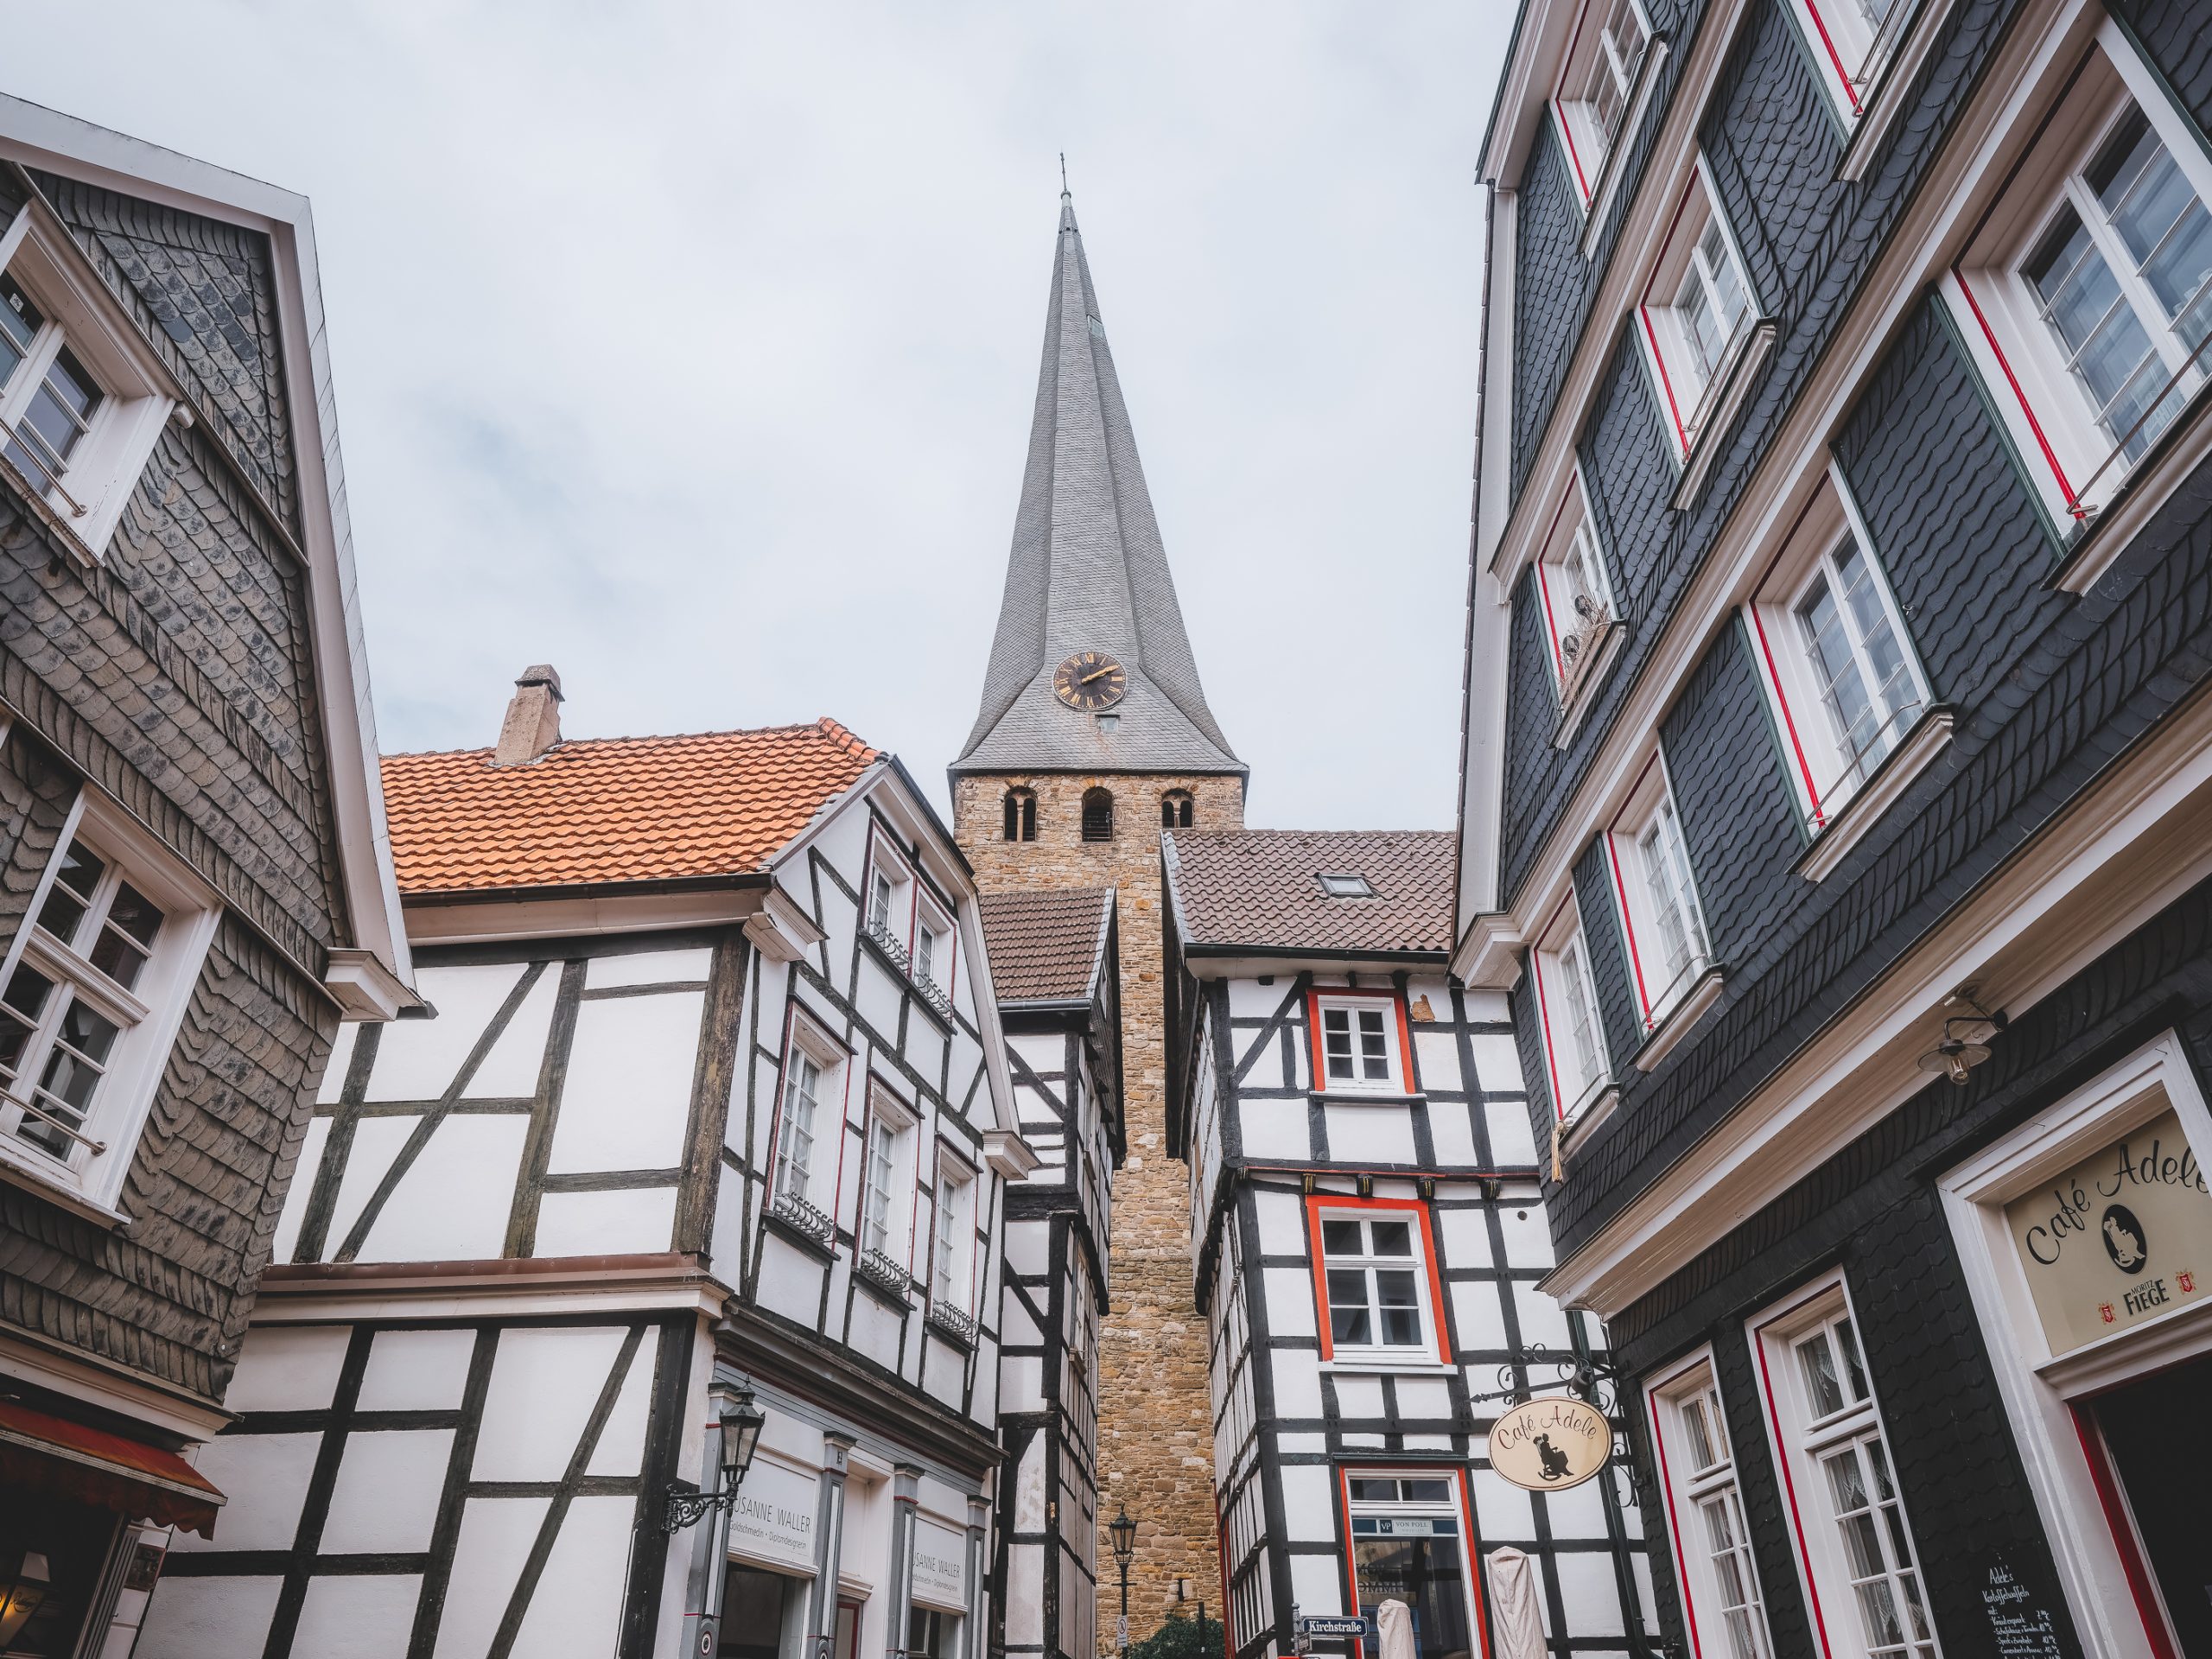 Das Foto ziegt die Altstadt von Hattingen